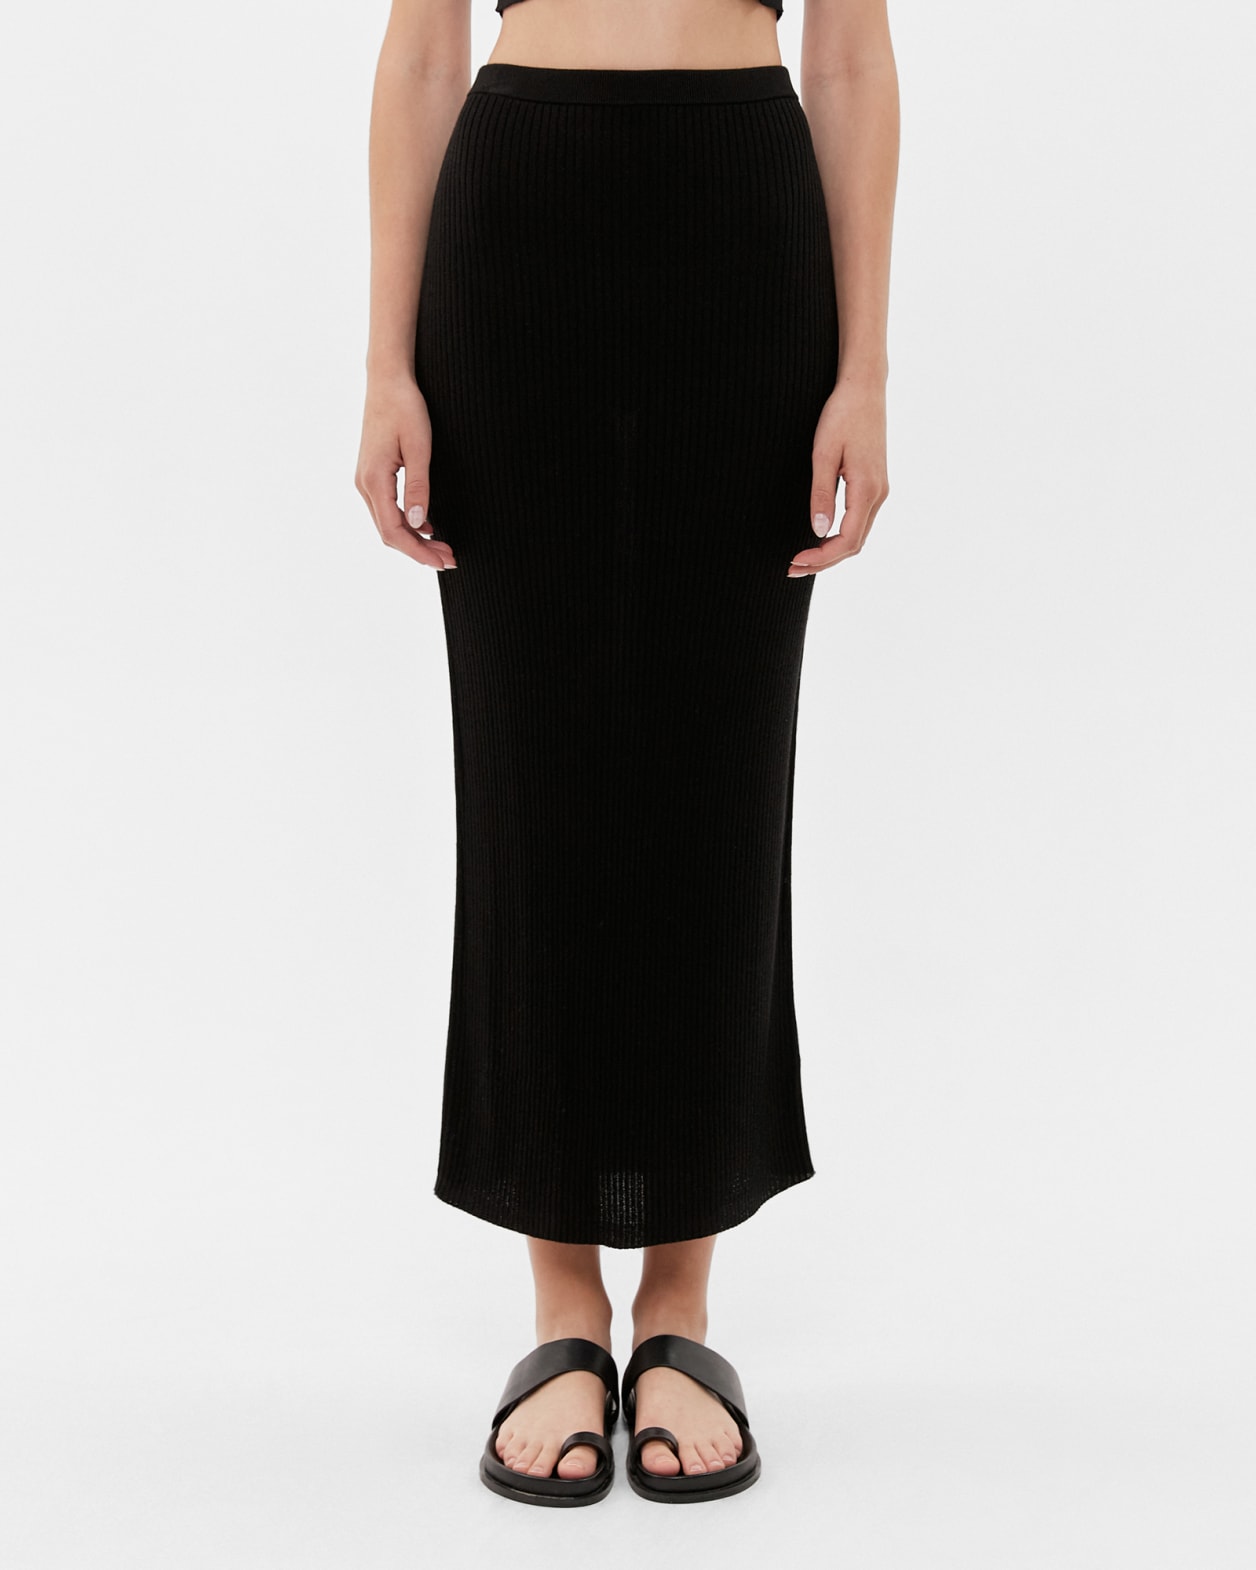 Sadie Knit Skirt in BLACK